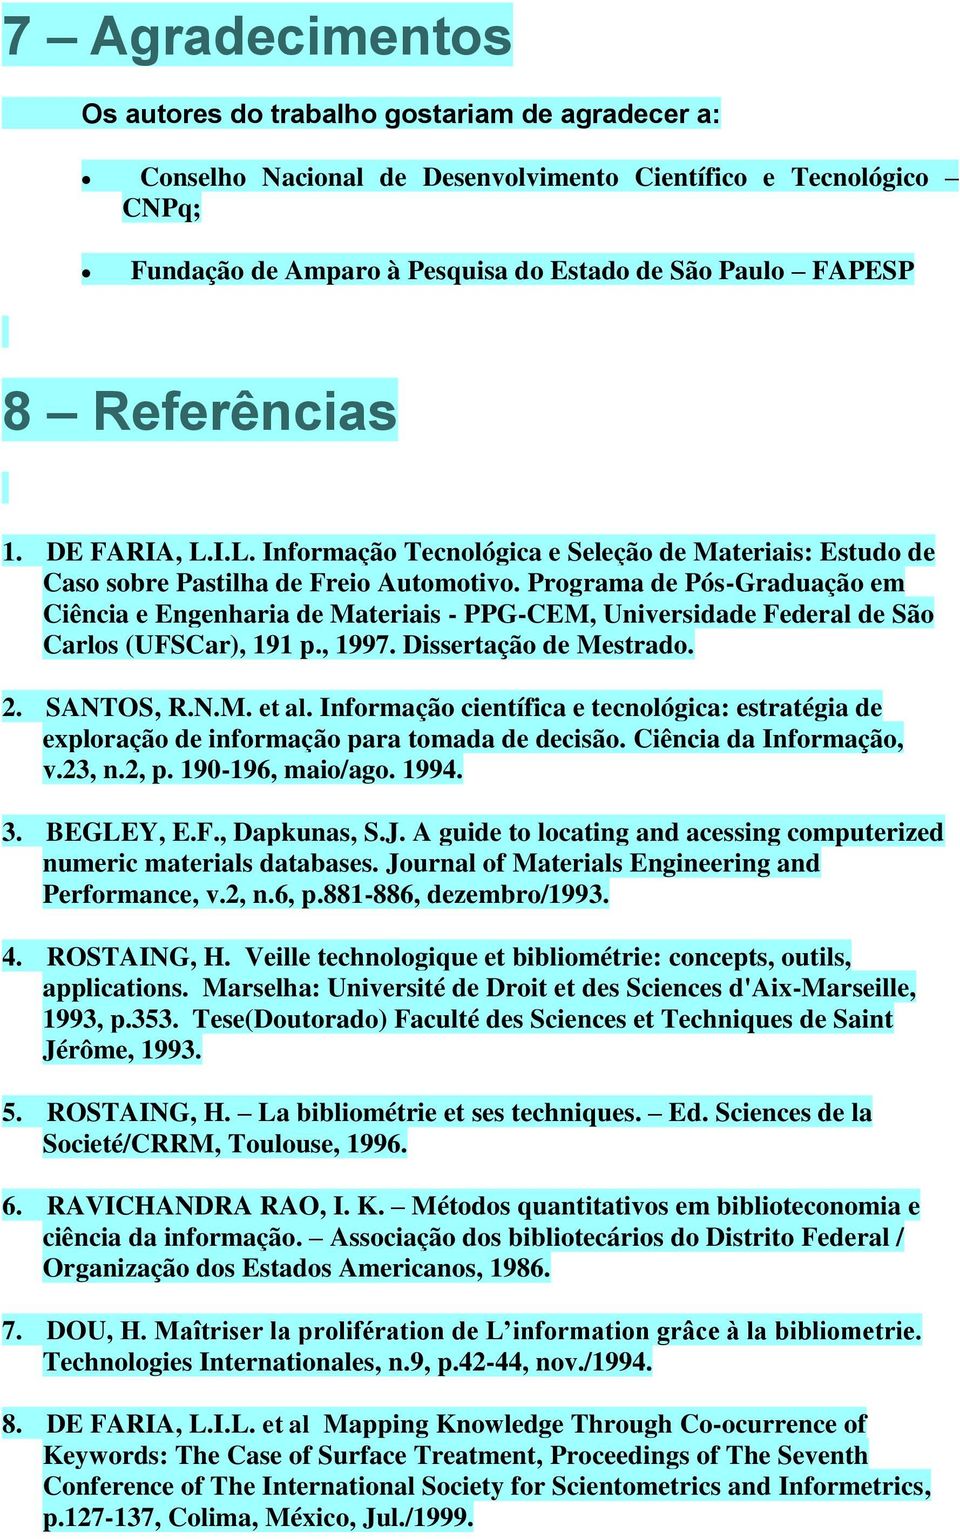 Programa de Pós-Graduação em Ciência e Engenharia de Materiais - PPG-CEM, Universidade Federal de São Carlos (UFSCar), 191 p., 1997. Dissertação de Mestrado. 2. SANTOS, R.N.M. et al.